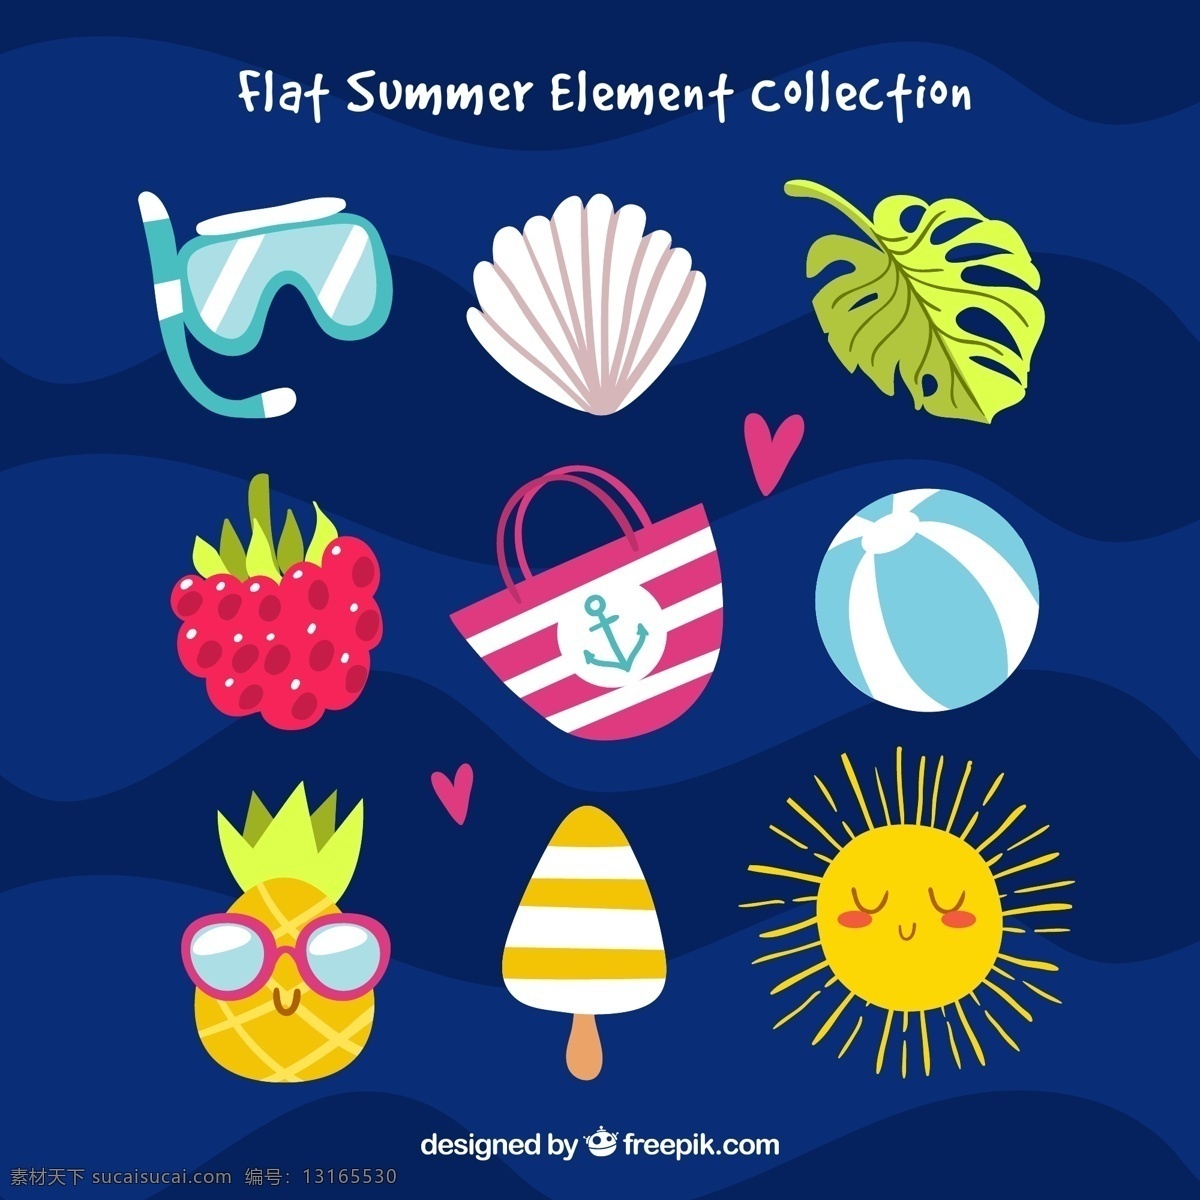 彩色 扁平化 夏季 元素 太阳 球 菠萝 冰淇淋 包包 矢量 卡通 生活百科 生活用品